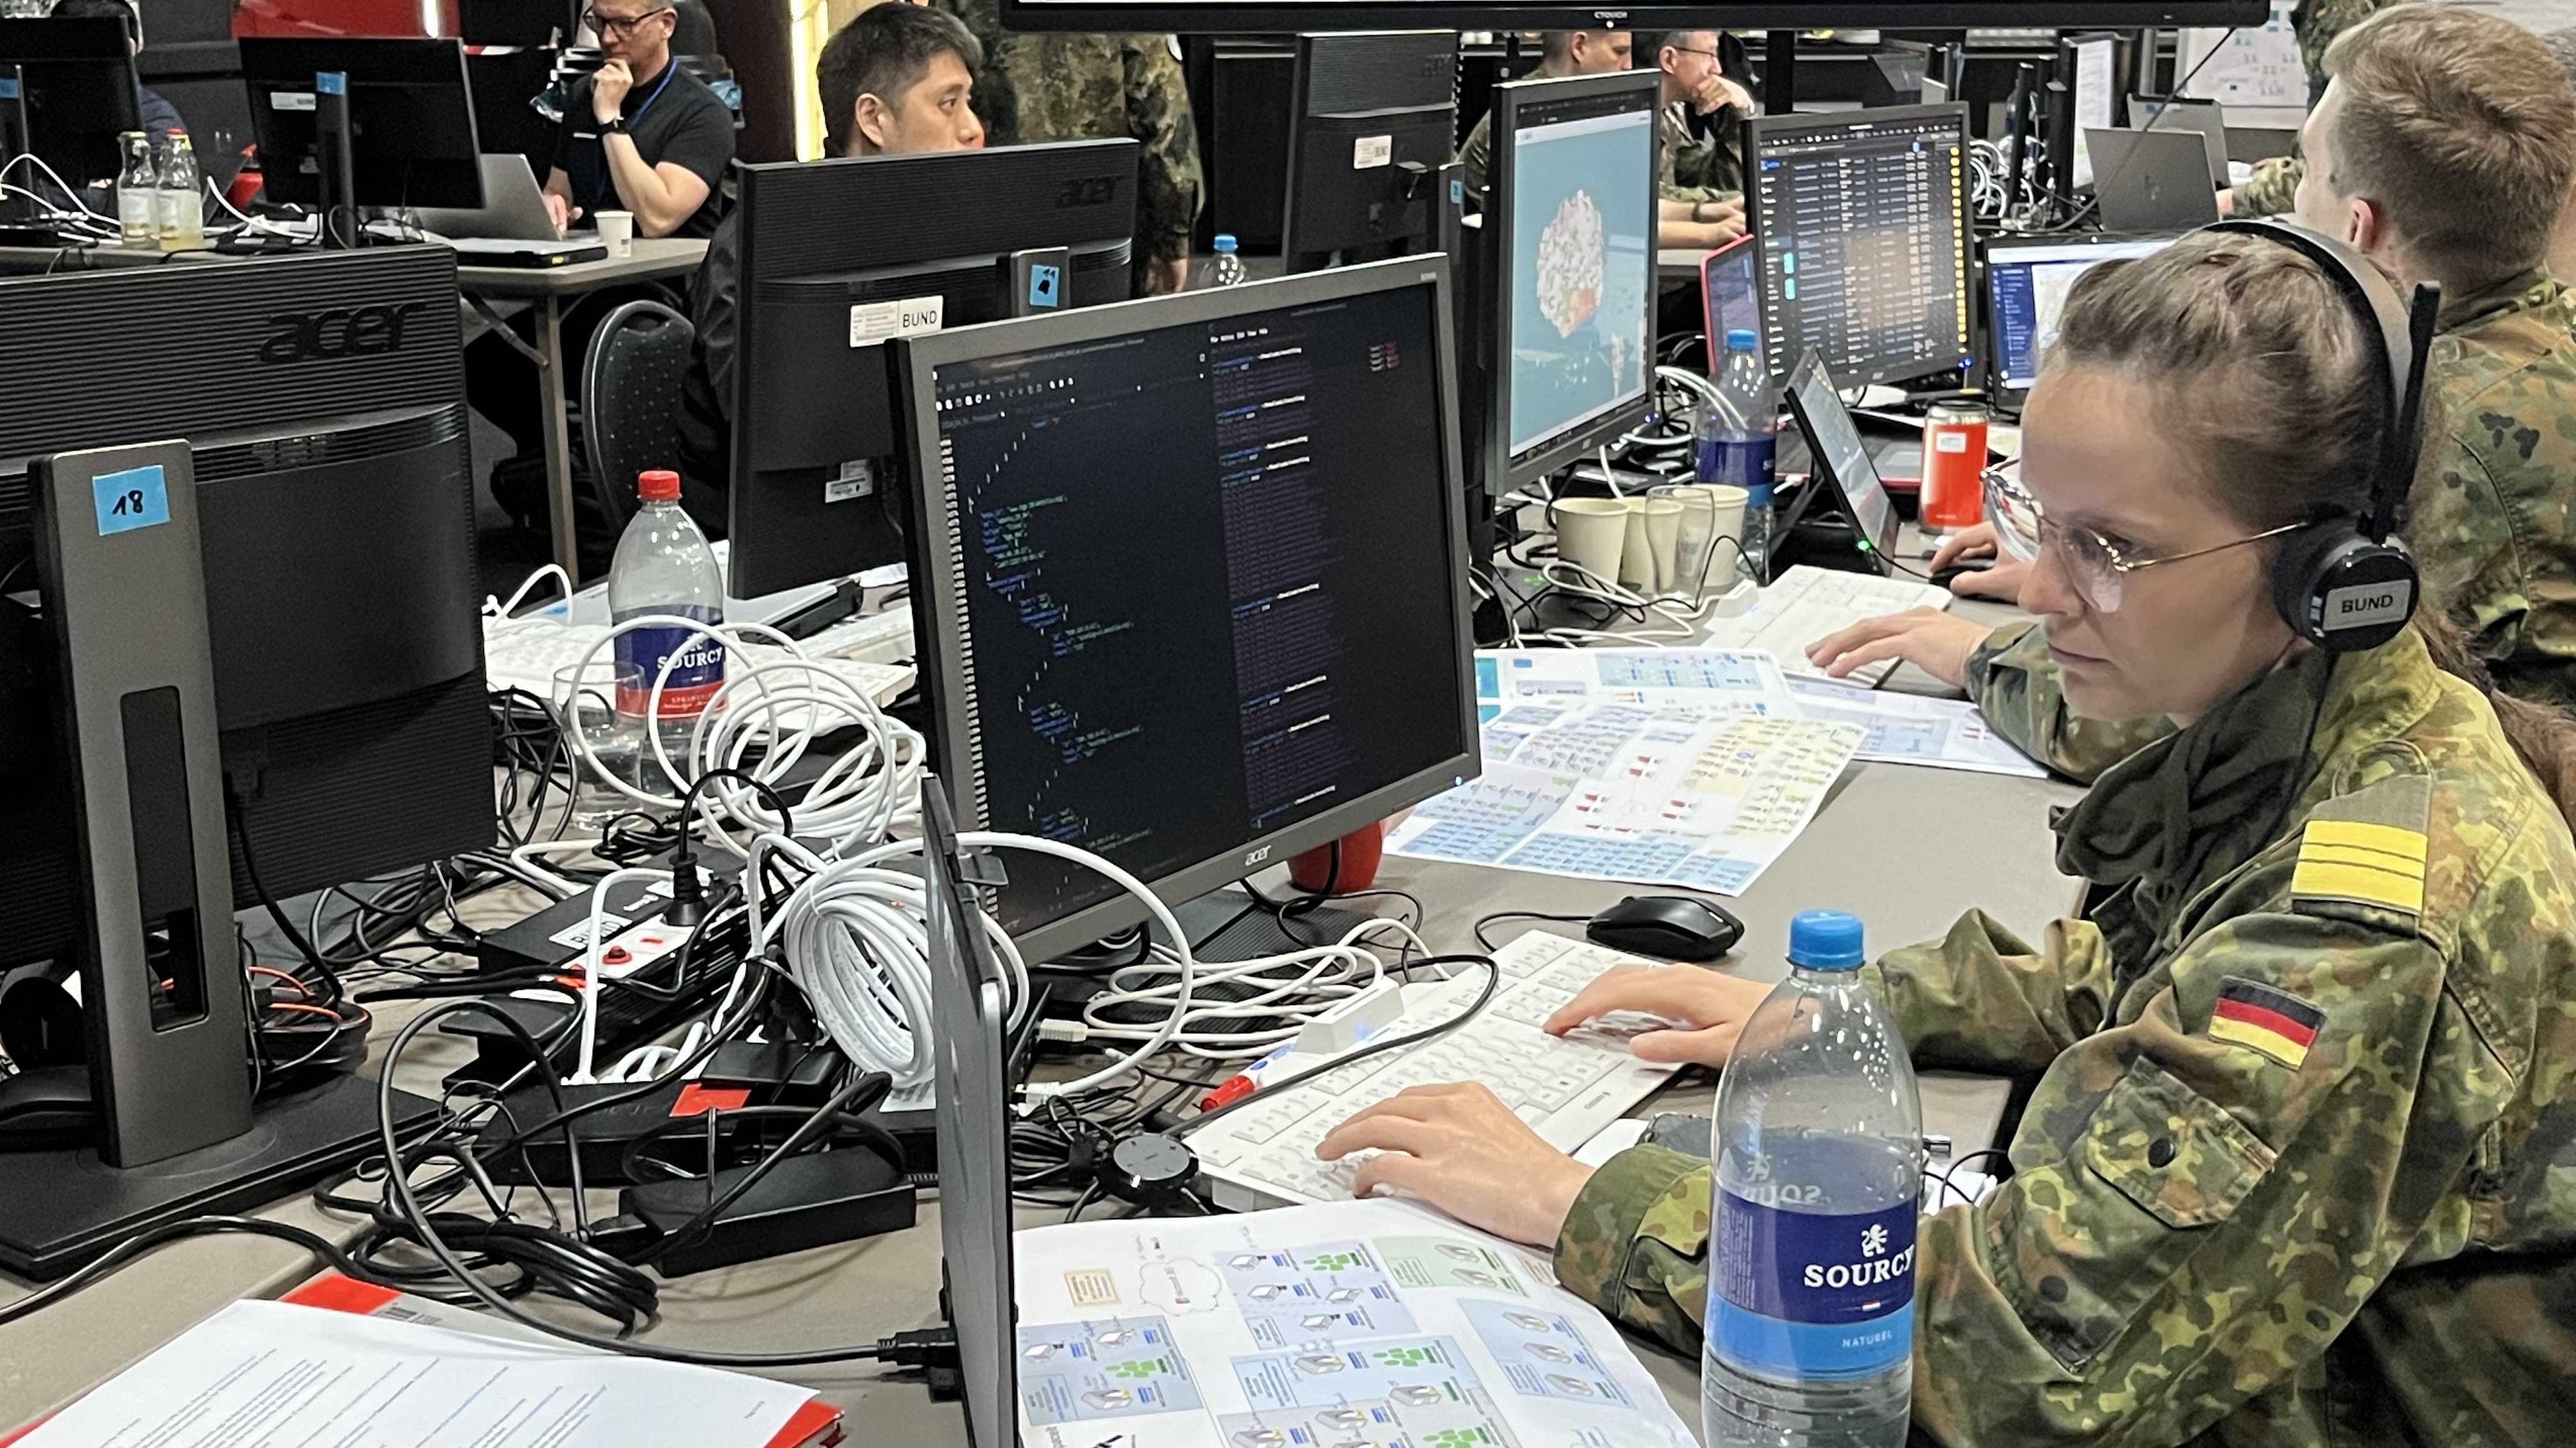 Cybersoldaten in Uniform an Rechnern